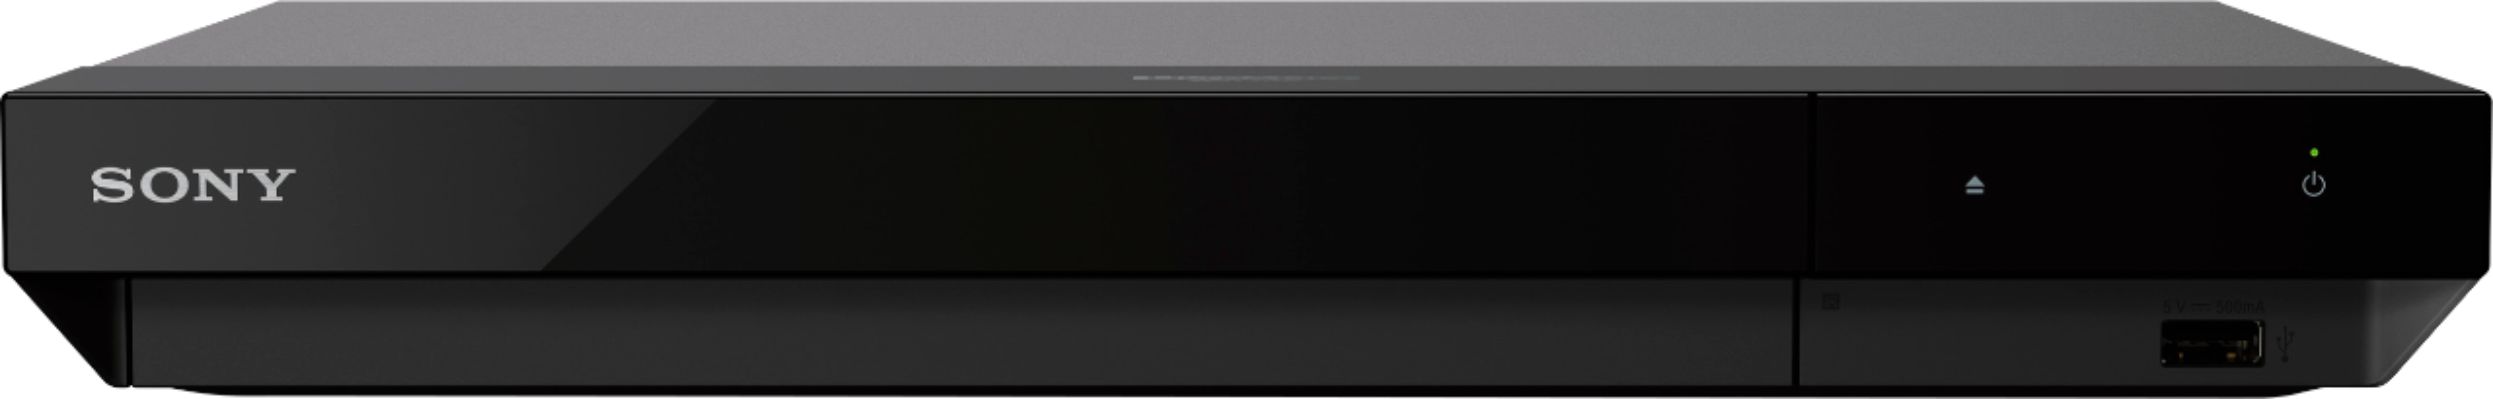 Reproductor de Blu Ray 4K Ultra HD de Sony con HDR 4K y cable HDMI Dolby  Vision + de 6 pies (UBP-X700)